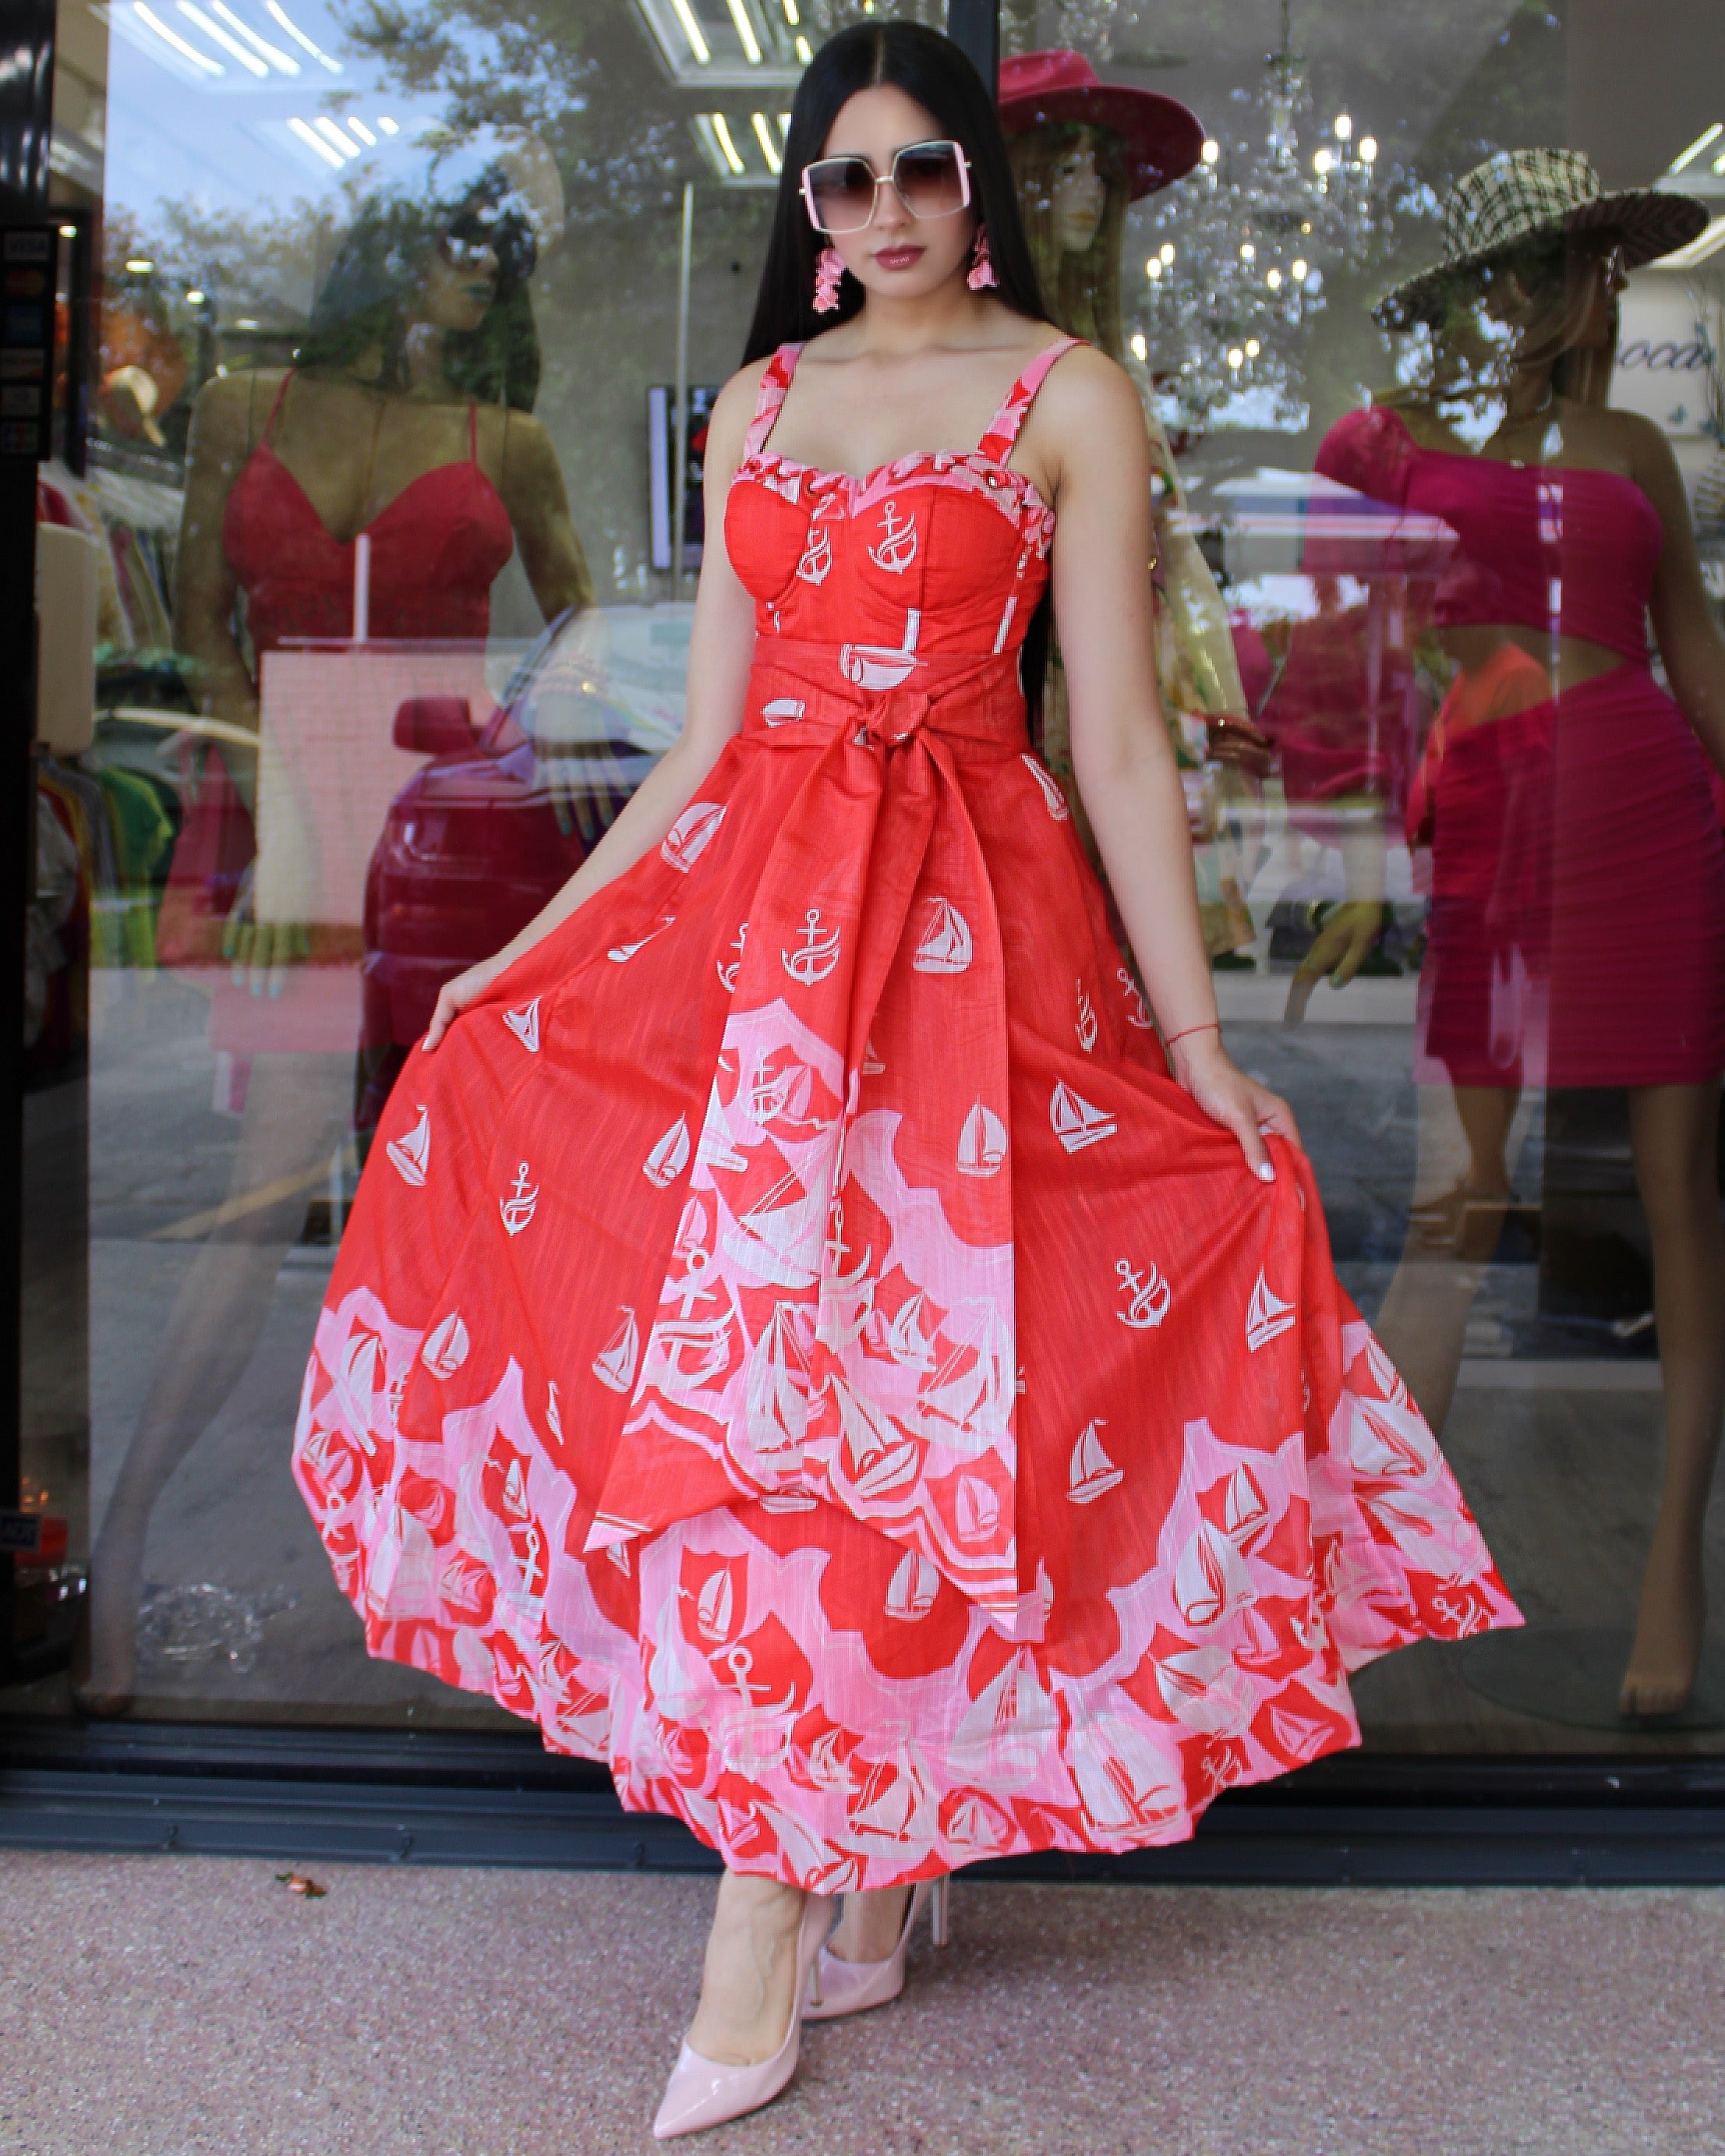 Match My Style Princess Cut Organza Dress Red